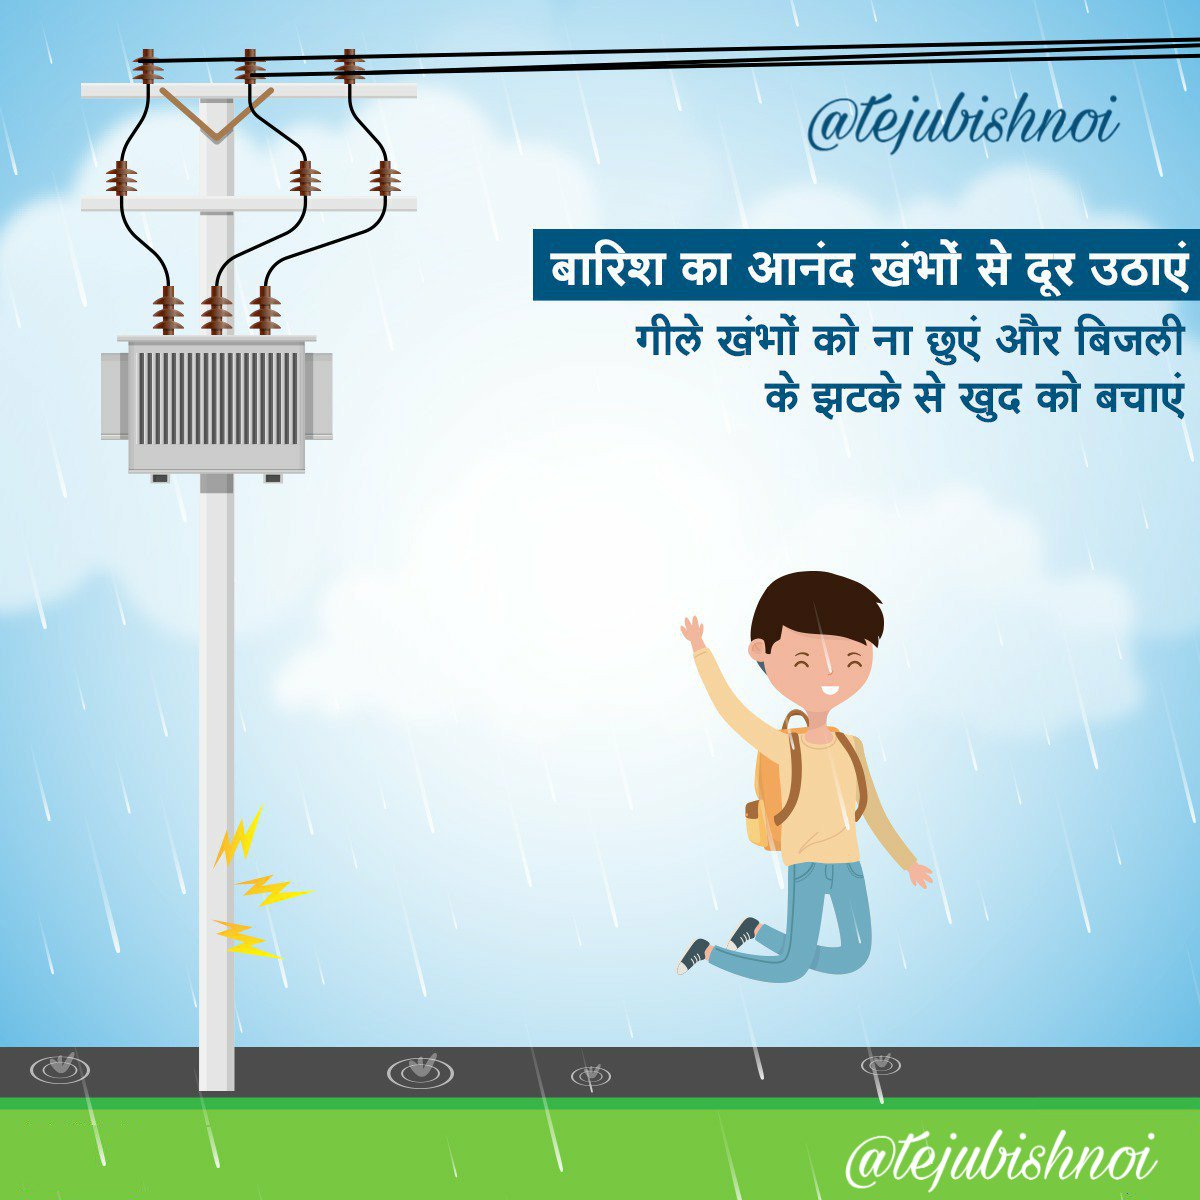 बारिश मे बिजली के खम्भे हानिकारक हो सकते है, सुरक्षा के लिए दूरी बनाये रखें।  

Be careful, be safe.

#JodhpurPolice #TeamJodhpurPolice #SafeJodhpur #SmartJodhpur #HappyJodhpur
#SunsineJodhpur